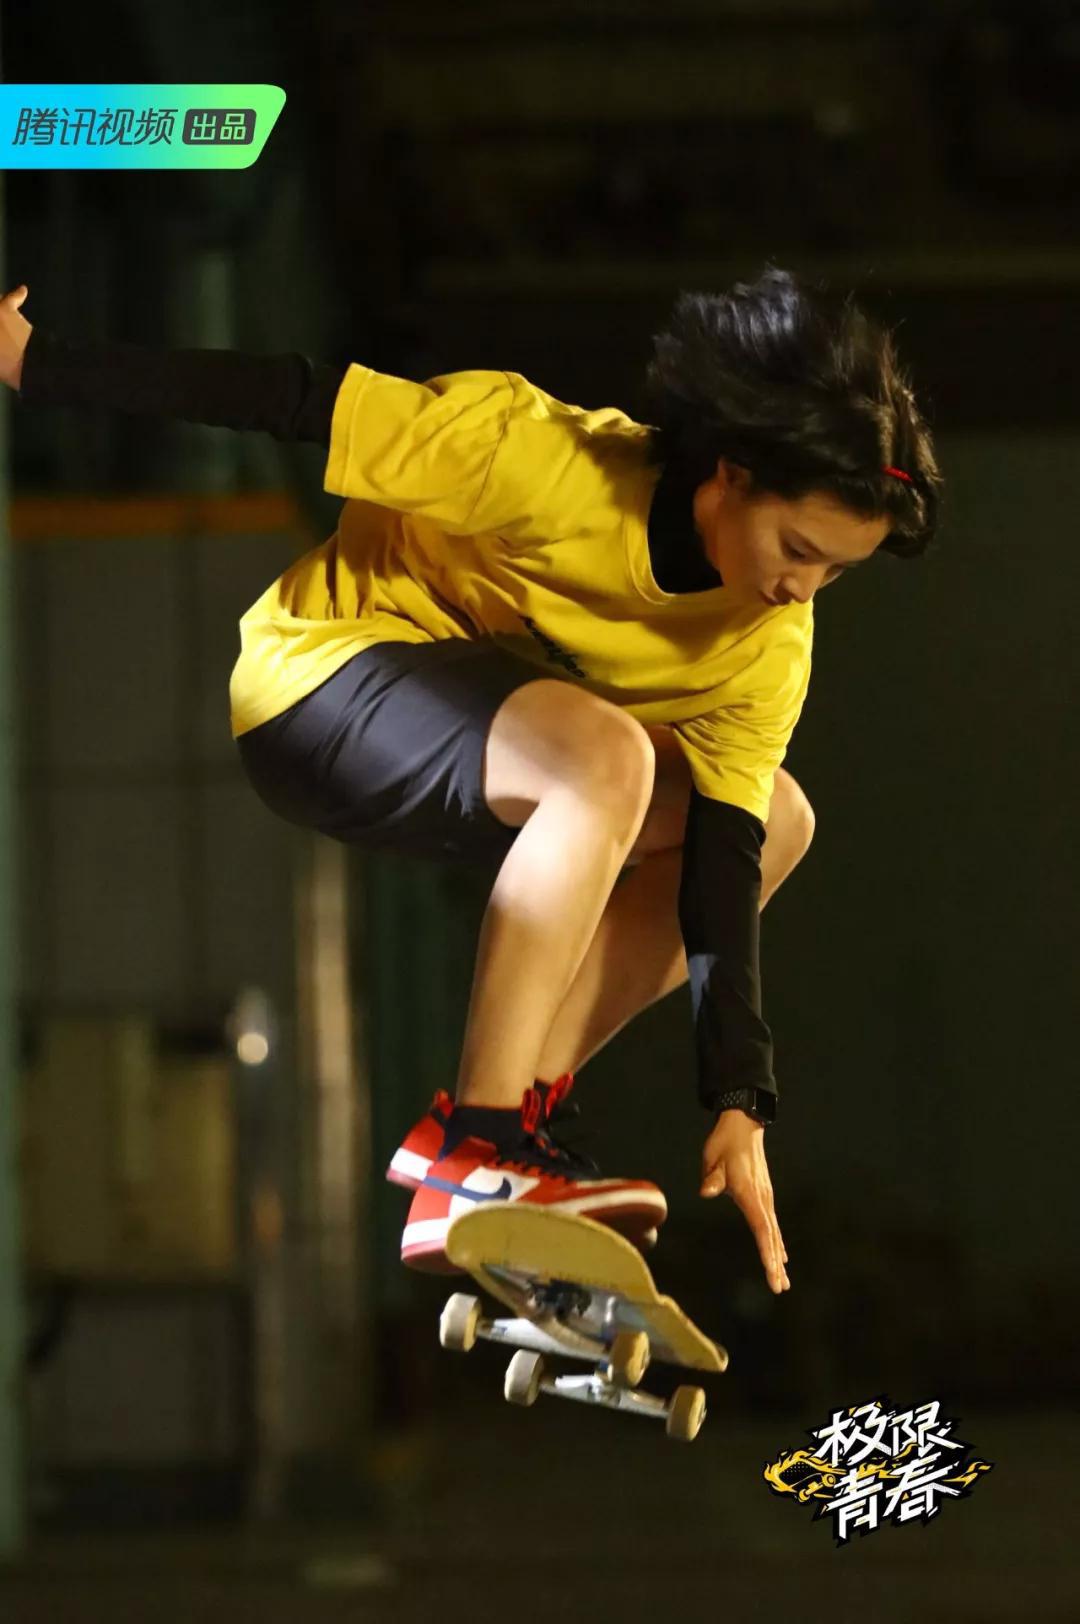 腾讯视频《极限青春》首播,国内终于迎来首档滑板运动真人秀